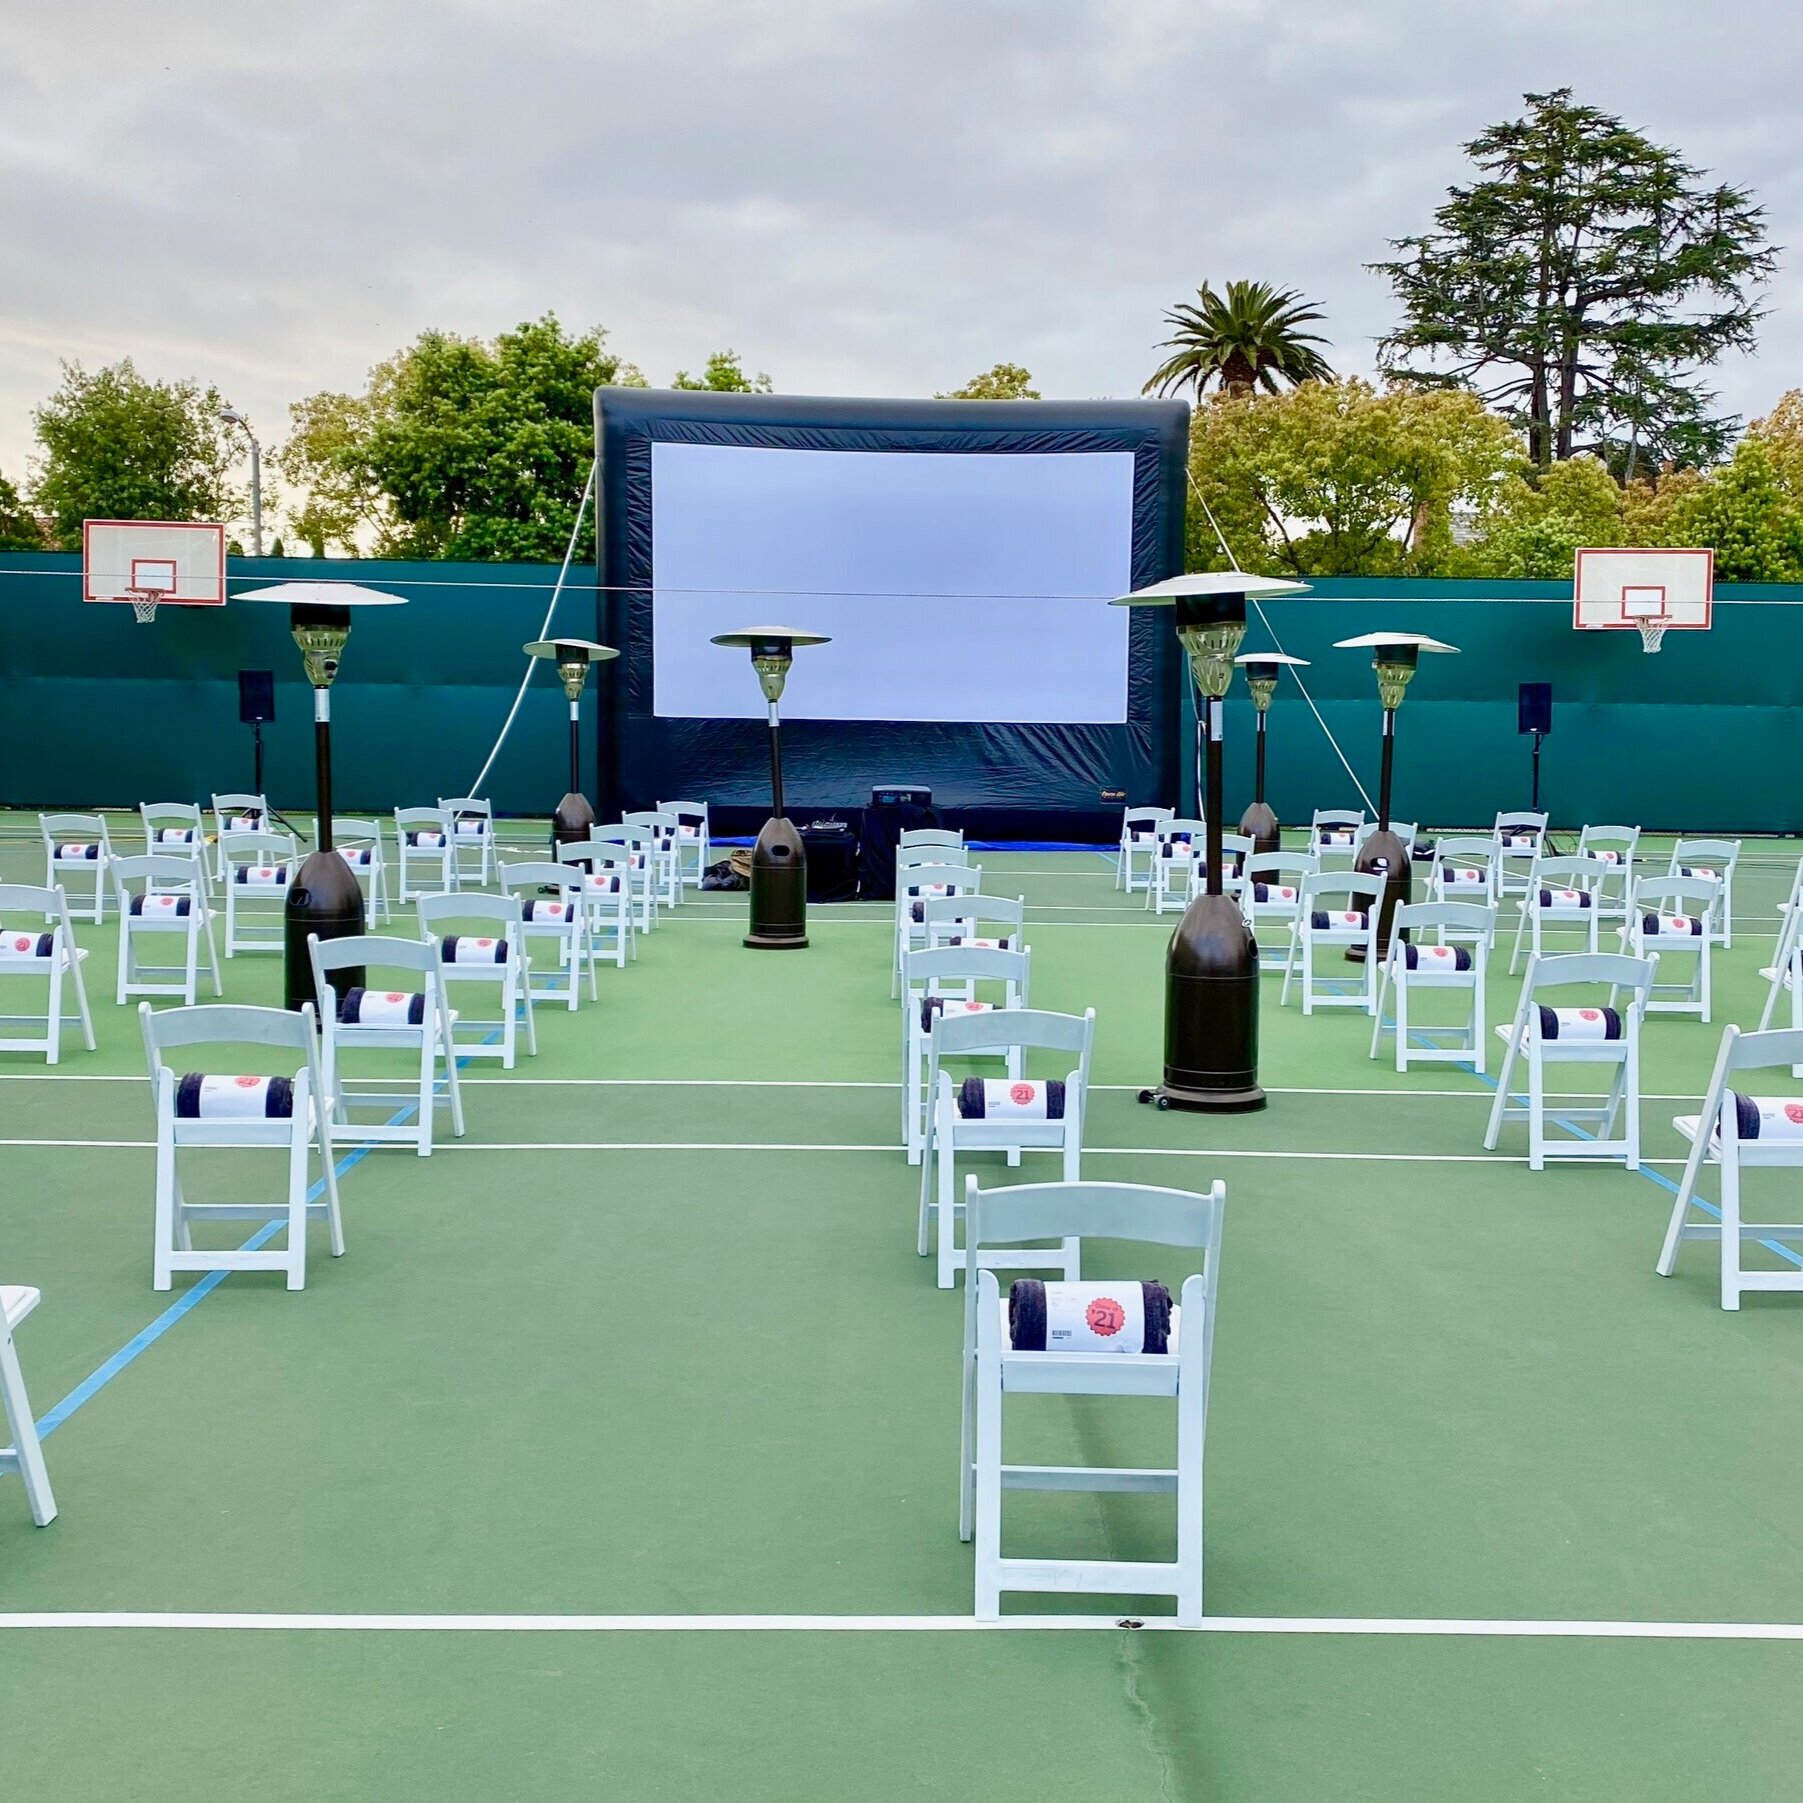 Premium+Outdoor+Movie_Tennis+Court.jpg